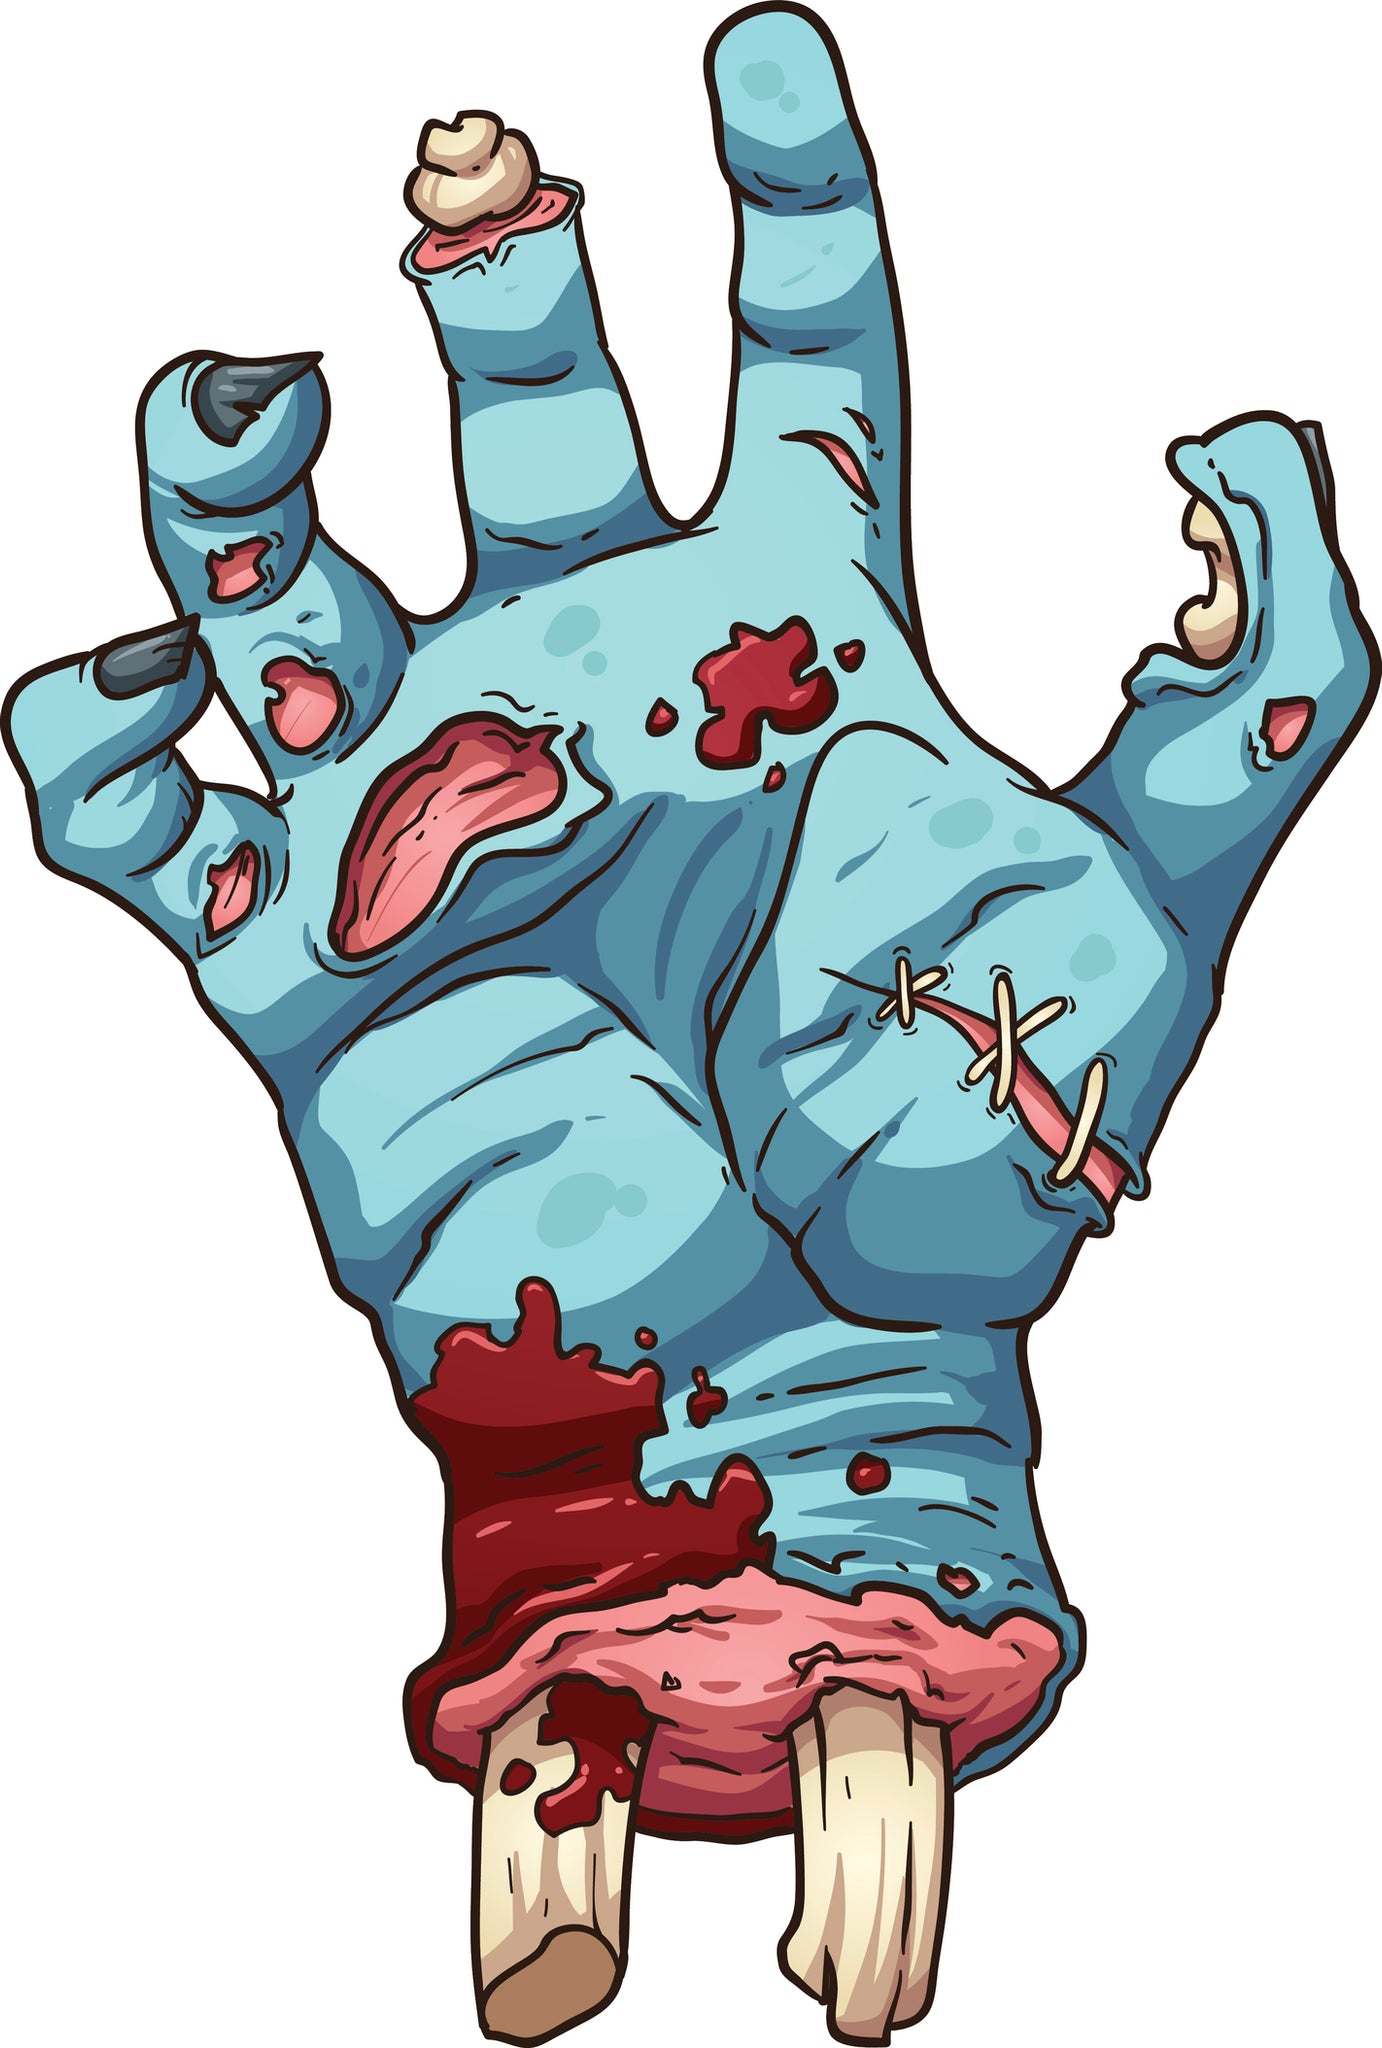 Zombie Hand Dead Bone Bloddy Stiches Gore Scary Undead Cartoon - Vinyl Decal Sticker